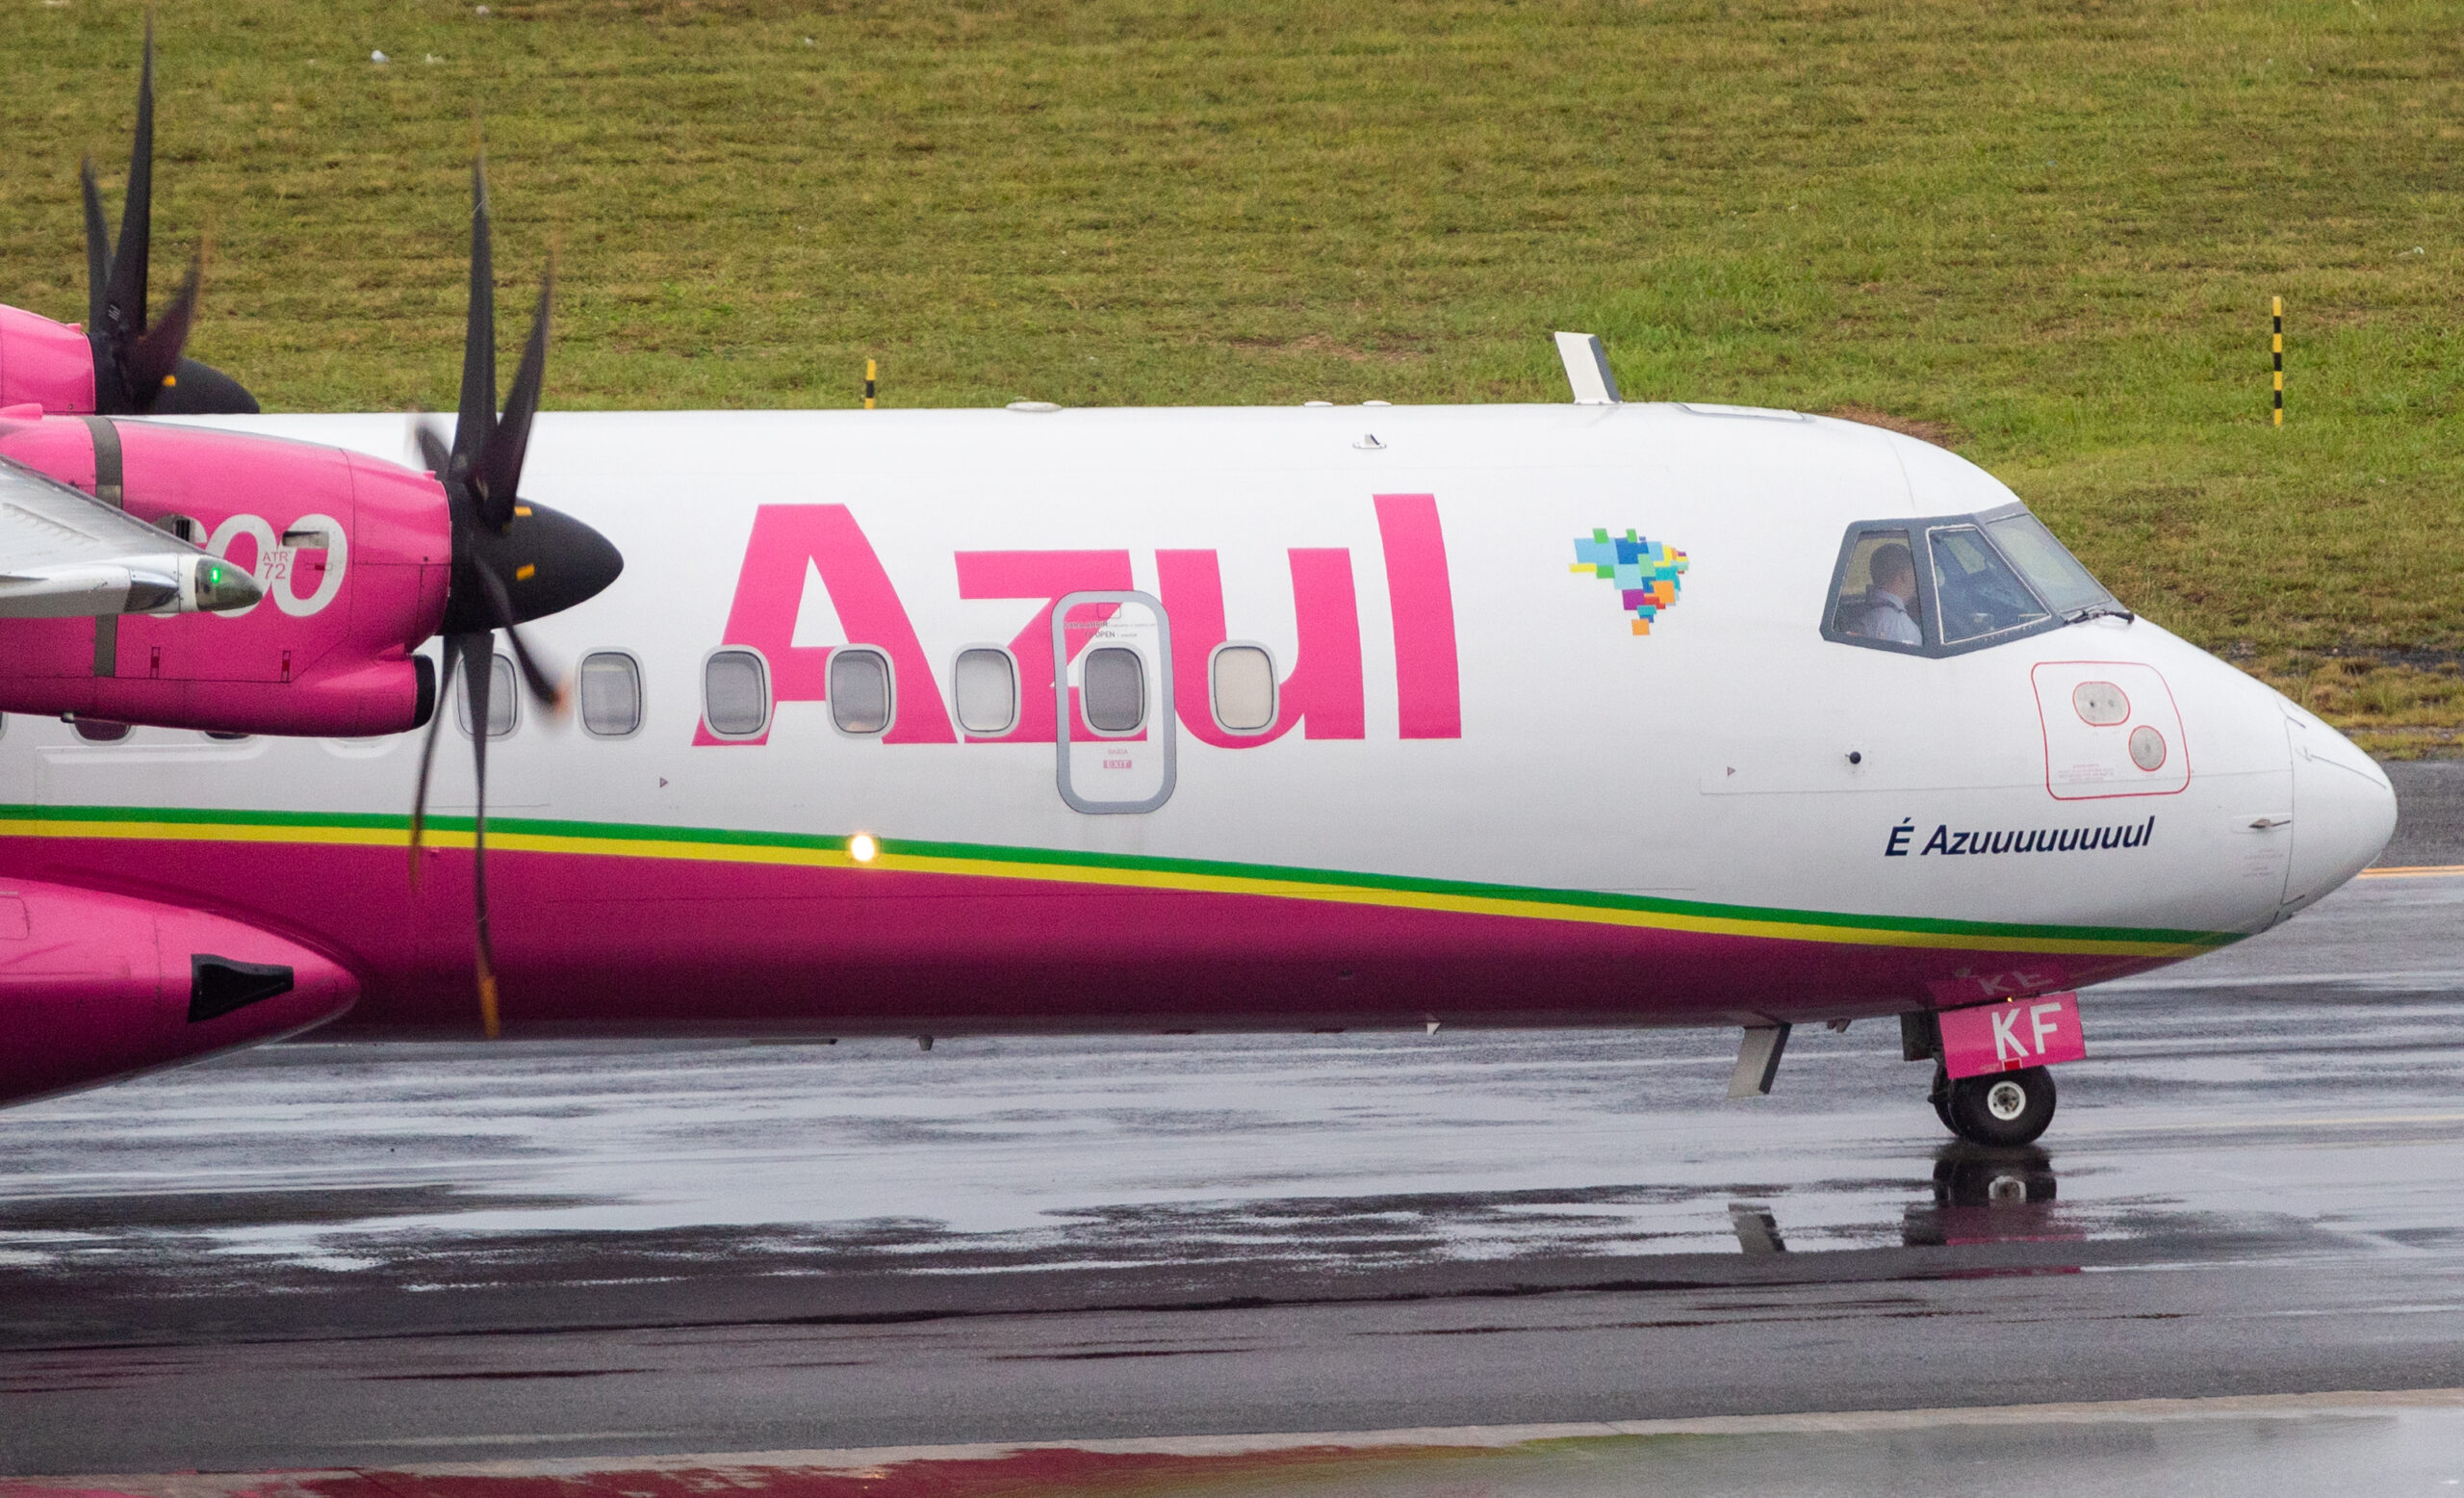 PR-AKF - ATR 72-600 - Azul Linhas Aéreas - Blog do Spotter